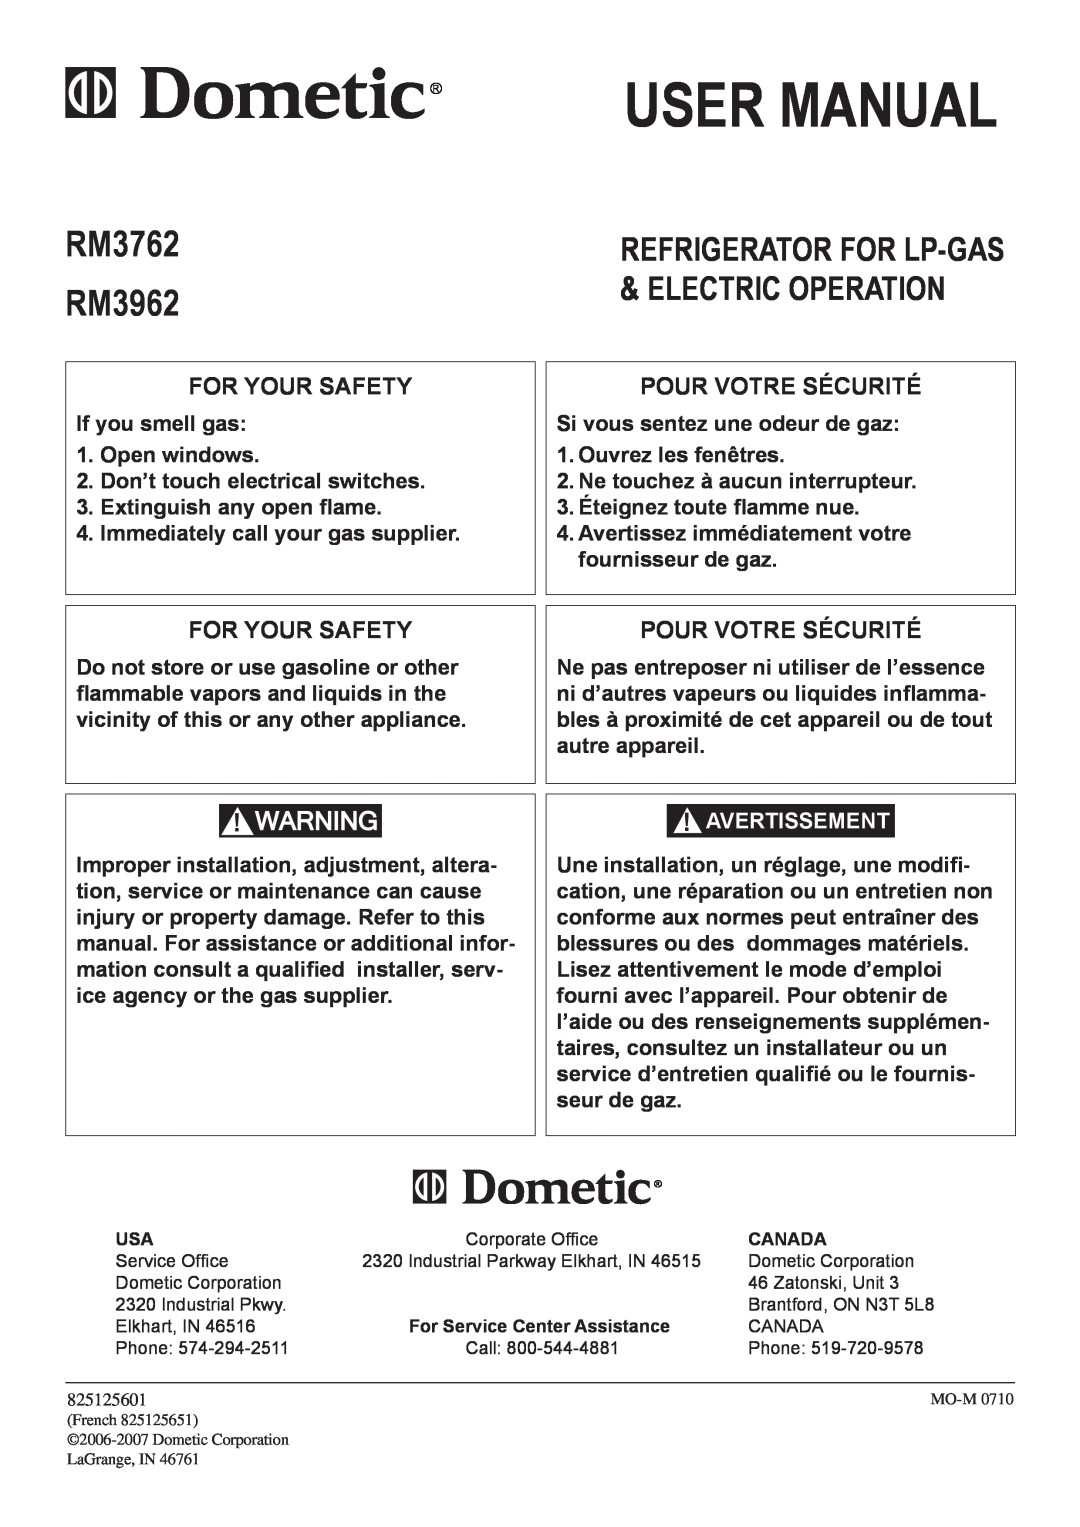 Dometic user manual RM3762 RM3962, Refrigerator for LP-gas & electric operation, For Your Safety, Pour votre sécurité 